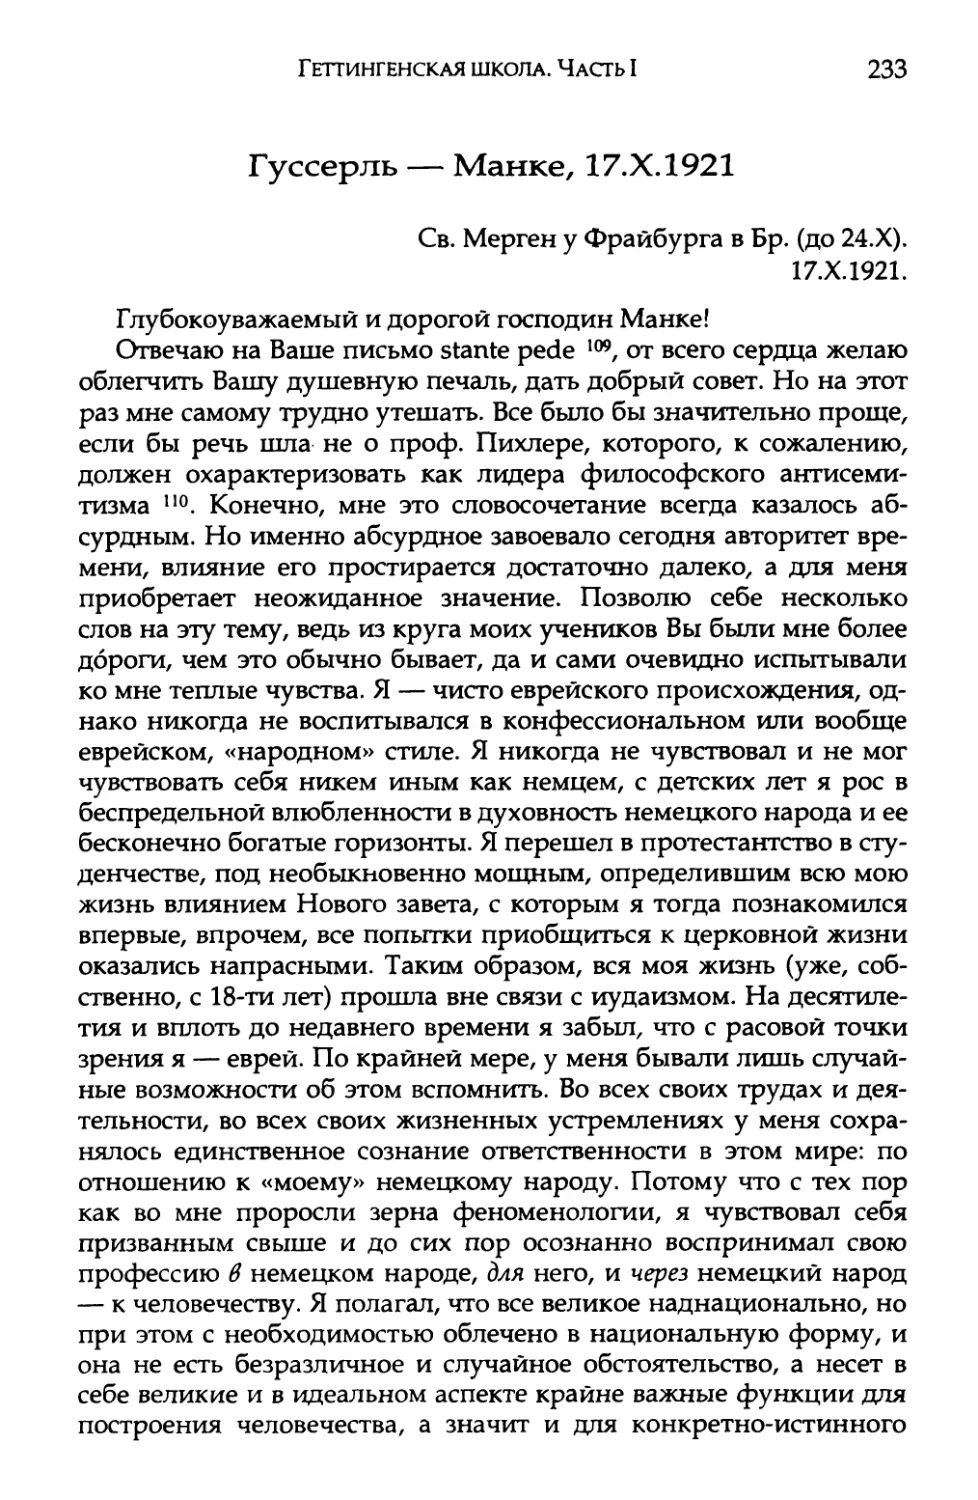 Гуссерль — Манке, 17.Х.1921. Перевод И. А. Михайлова